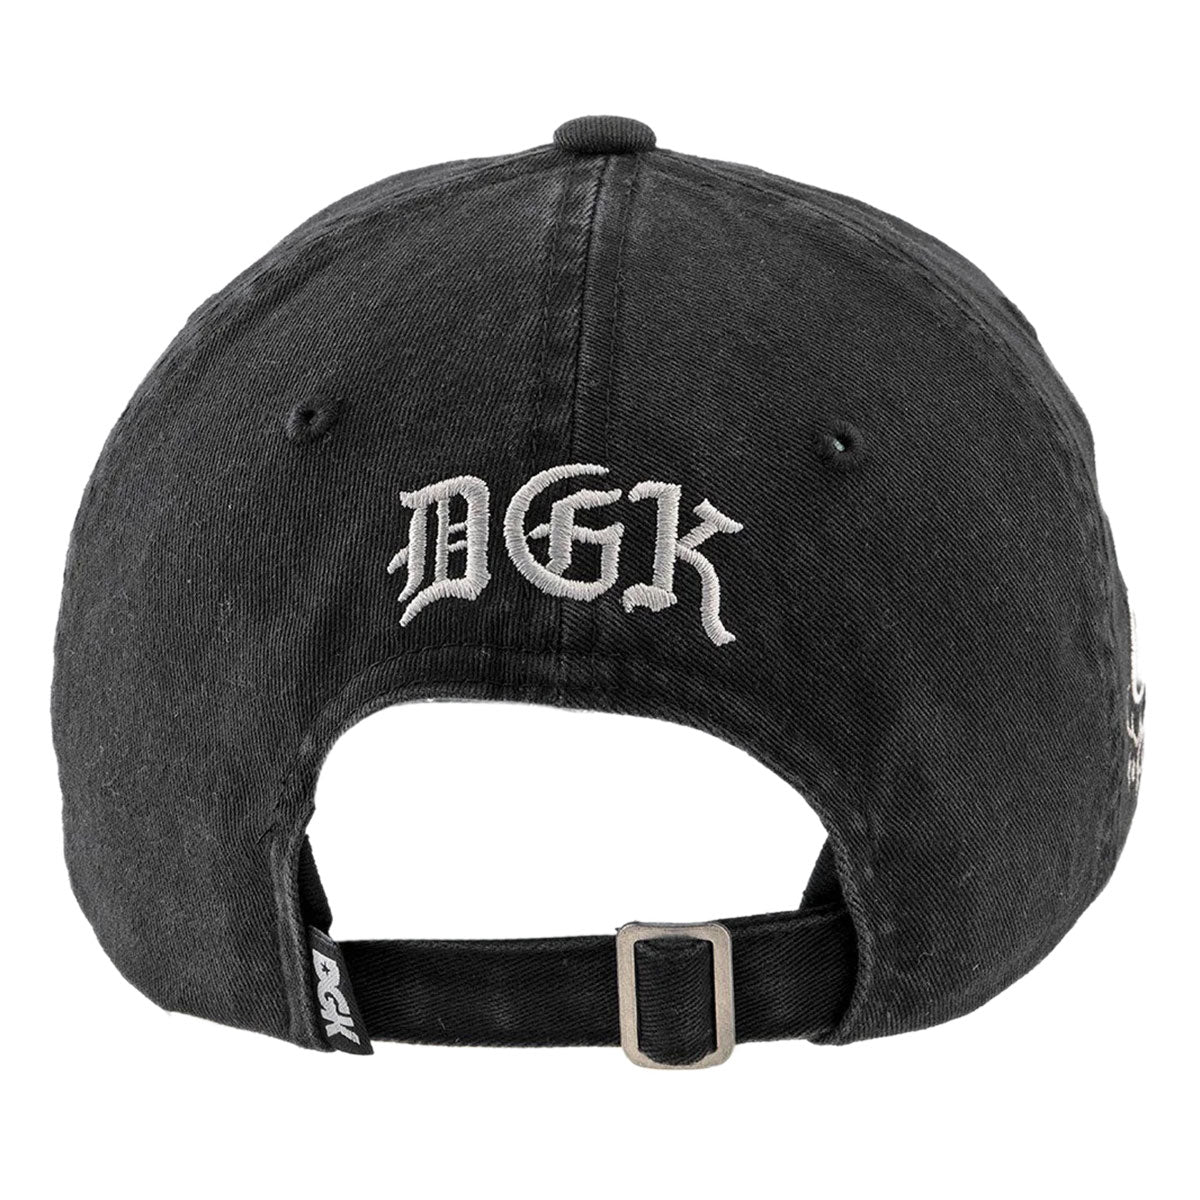 DGK Avenue Strapback Hat - Black image 2